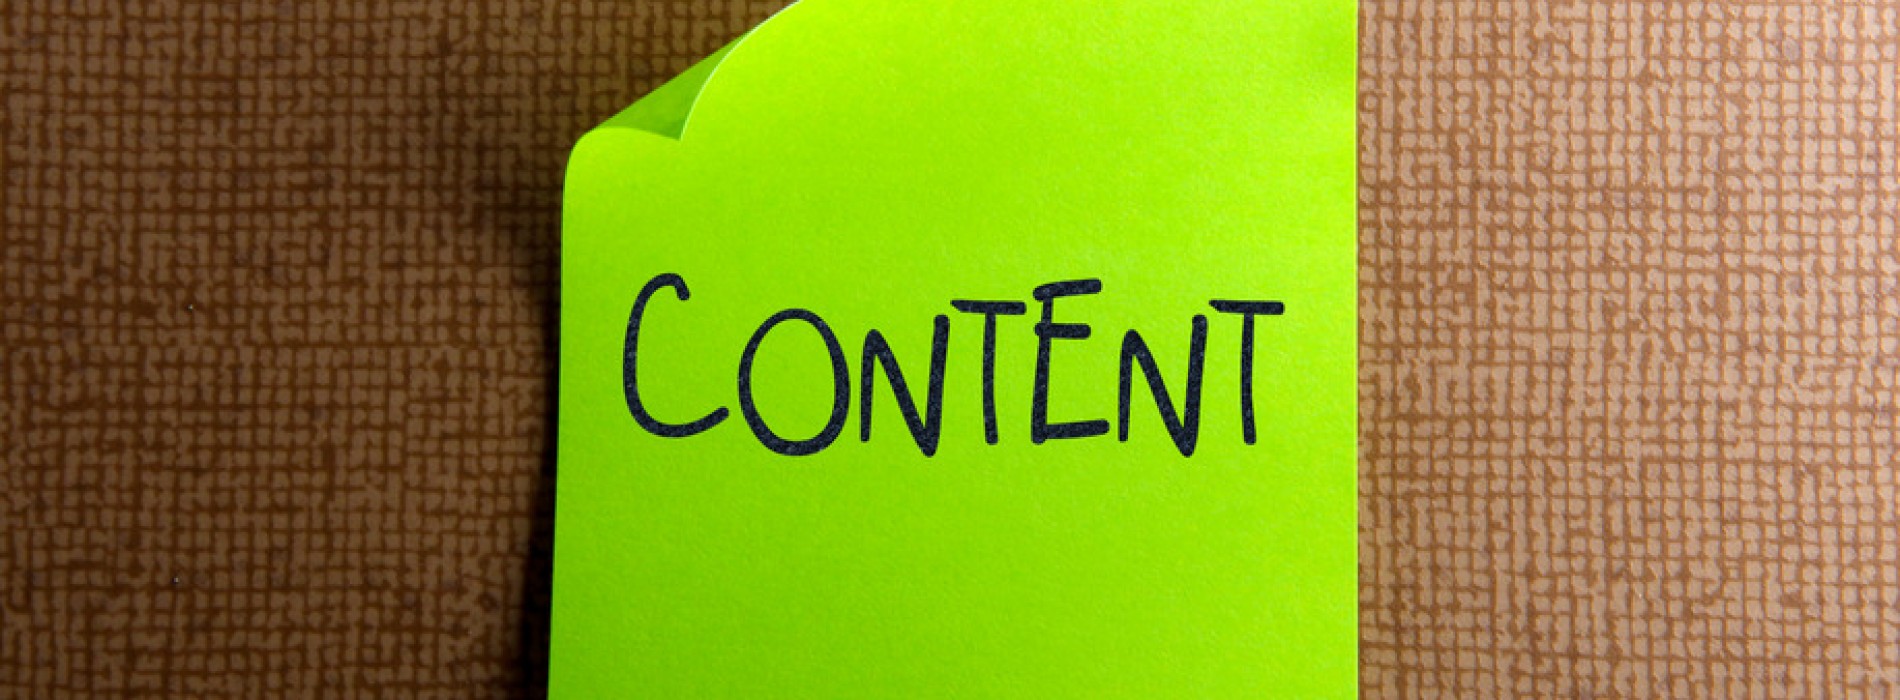 Content Marketing: najskuteczniejsze formaty w komunikacji z klientami